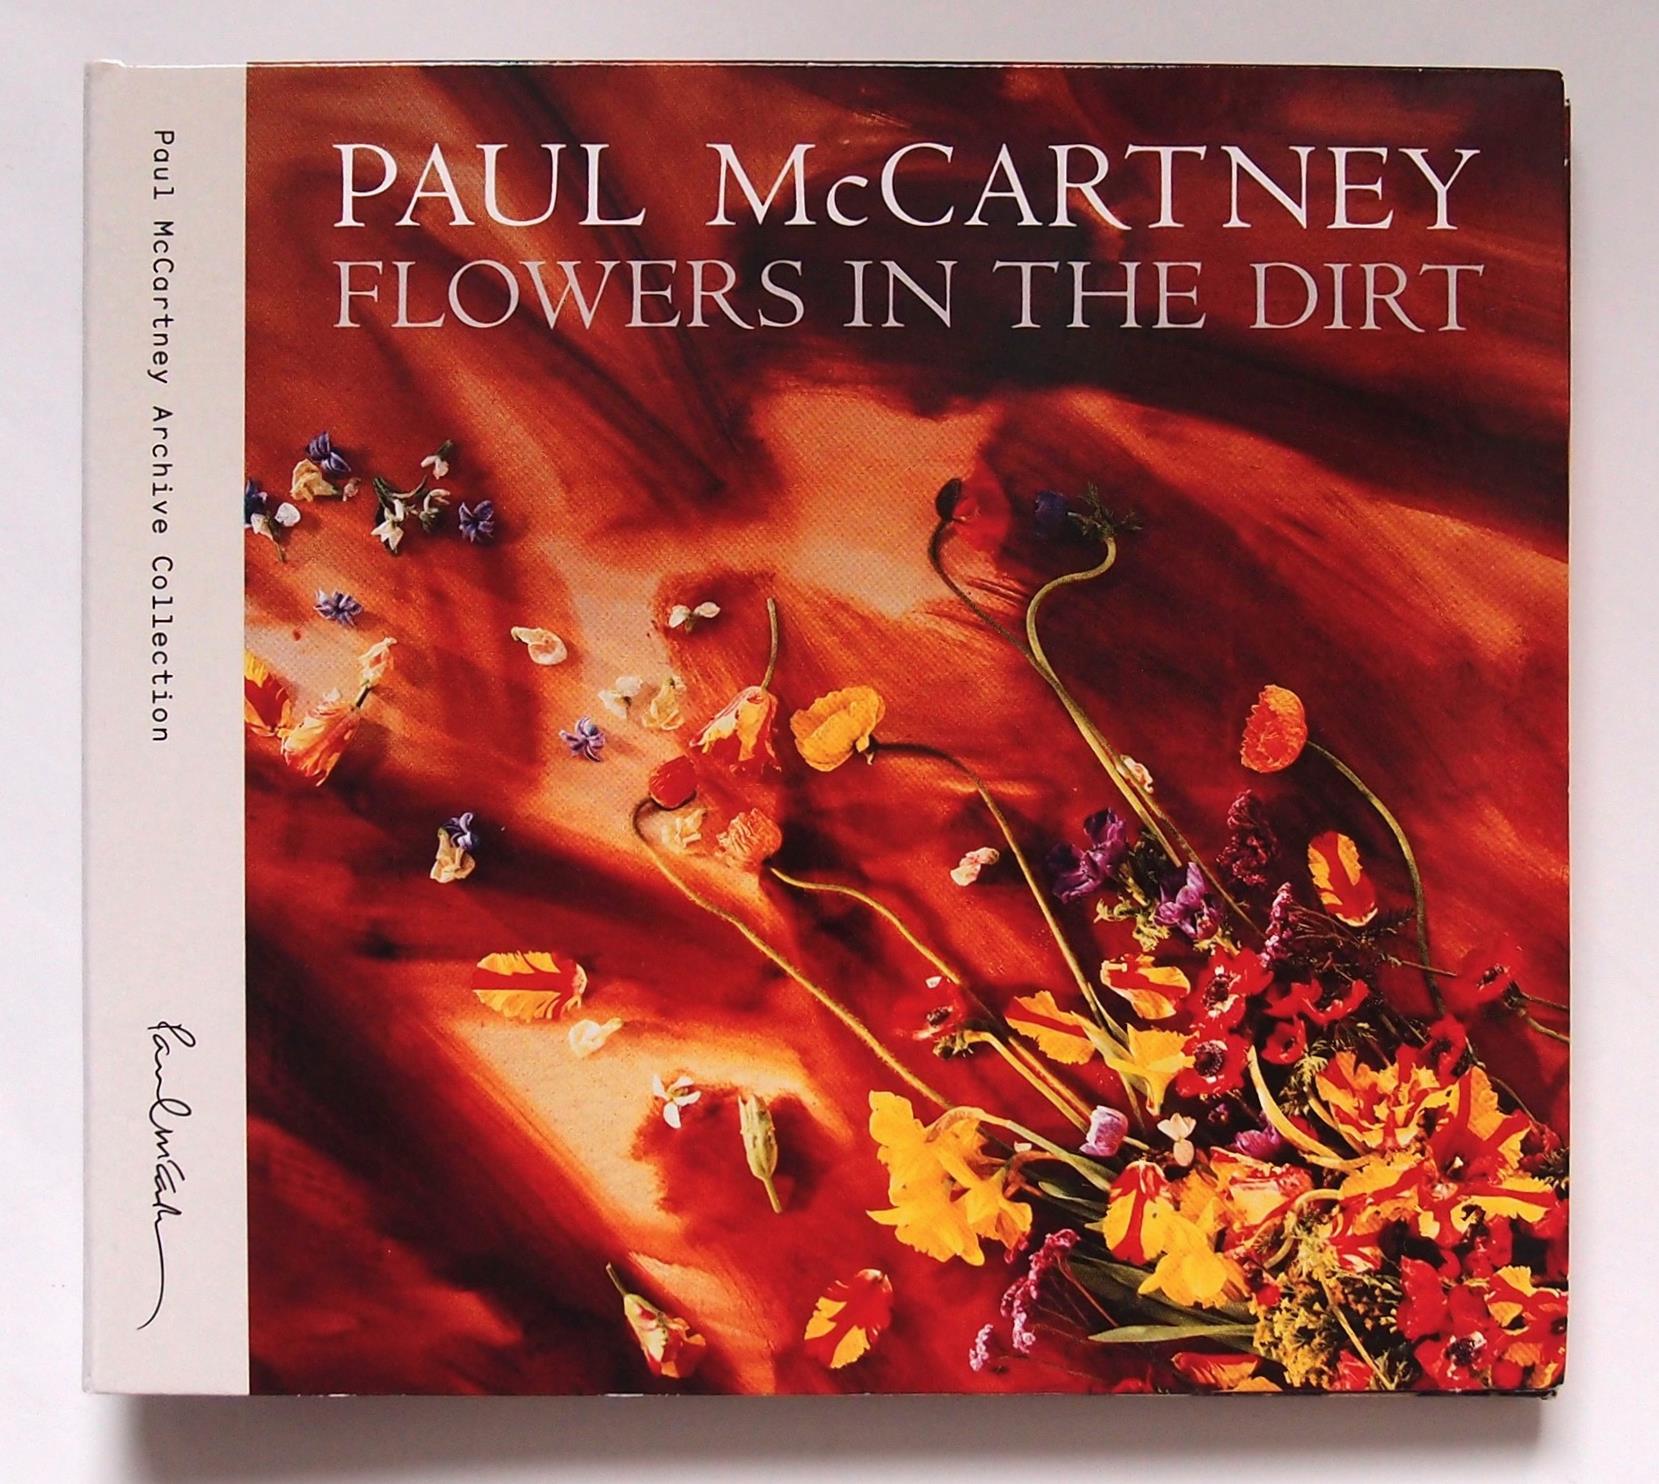 ポールとコステロのデモは、2枚組の『フラワーズ・イン・ザ・ダート［スペシャル・エディション］／ポール・マッカートニー』（ユニバーサルミュージック）にも収録されている。